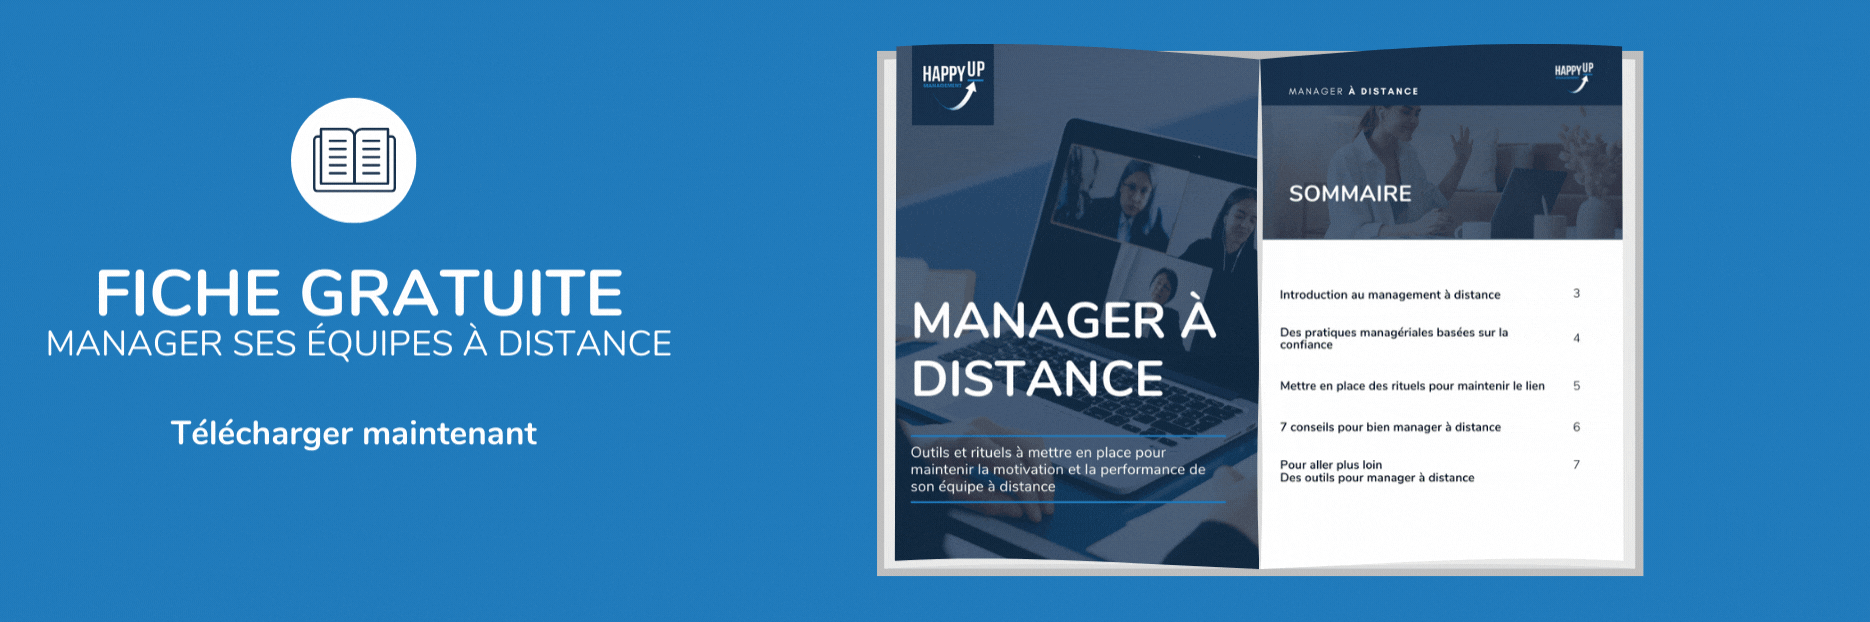 management a distance definition